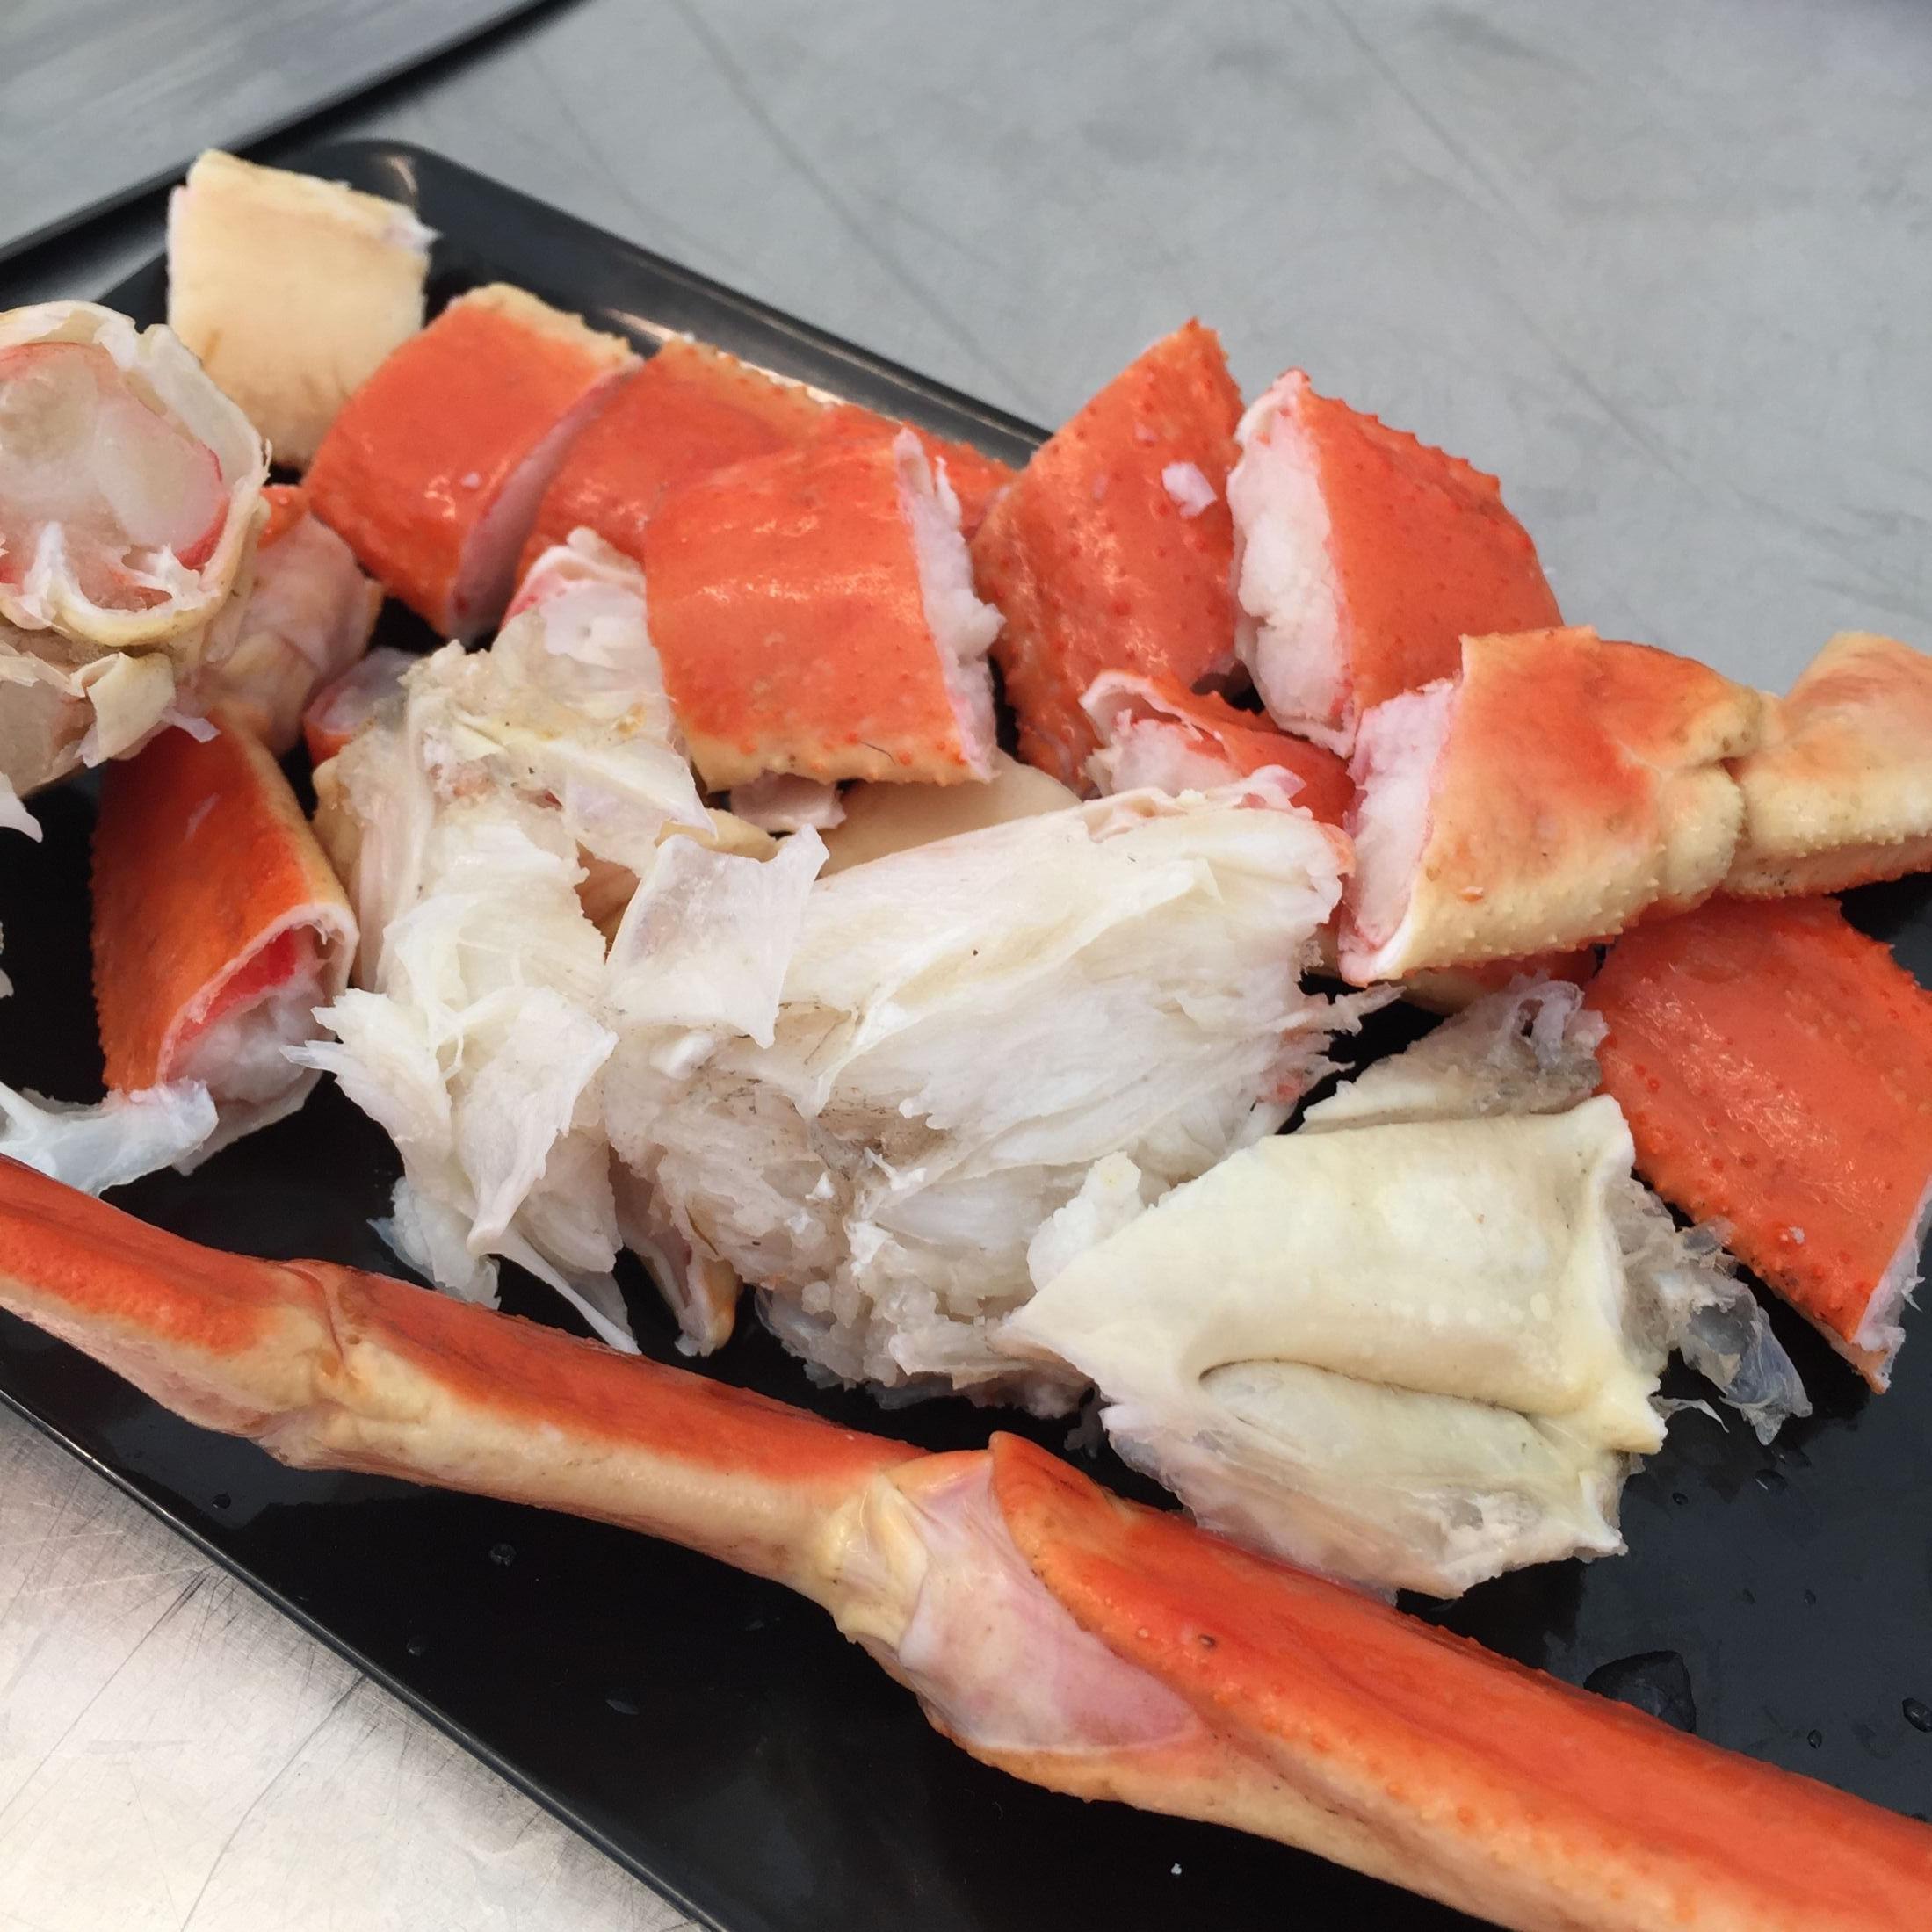 FRYS DEN FØRST: Snøkrabbekjøttet er hvitt og søtt. Det er lettest å få det ut av skallet om krabben har vært frossen før du skal spise den. Foto: Pia Cecilie Vabro/VG.